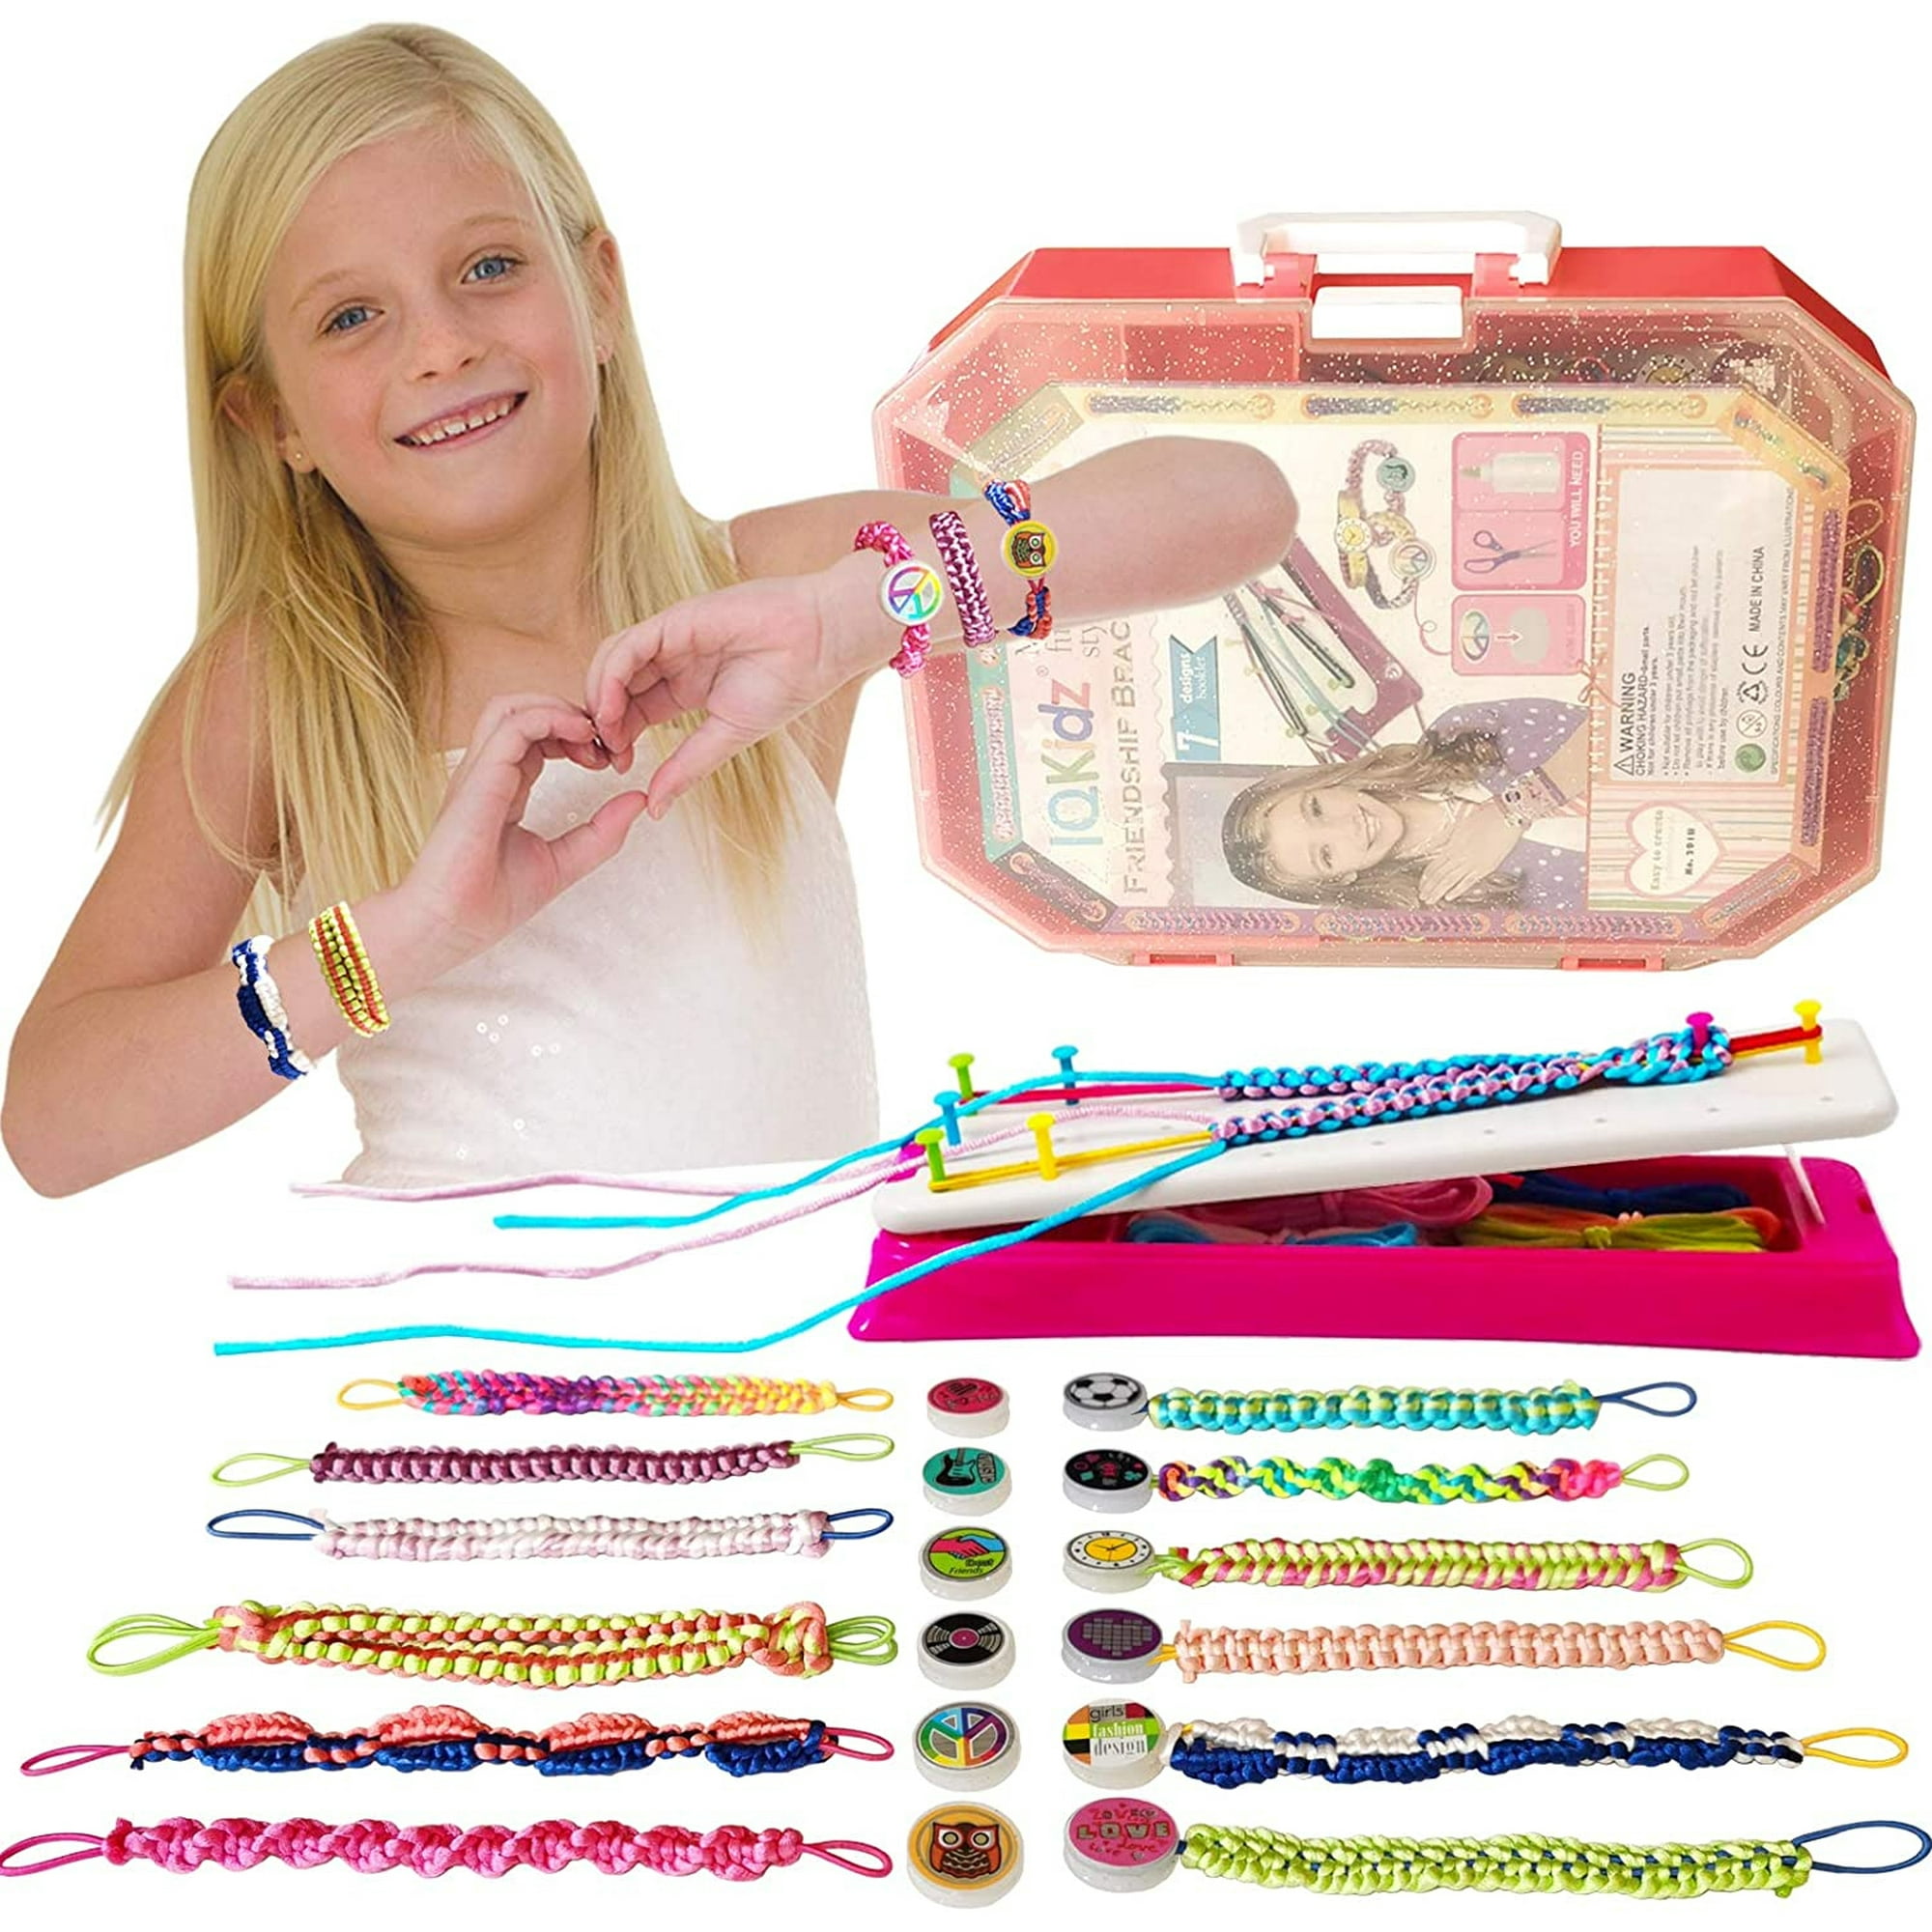 Kit de fabricación de pulseras de la amistad: haz pulseras de juguetes para  niñas de 8 a 12 años, regalos de cumpleaños geniales para niños de 7, 9